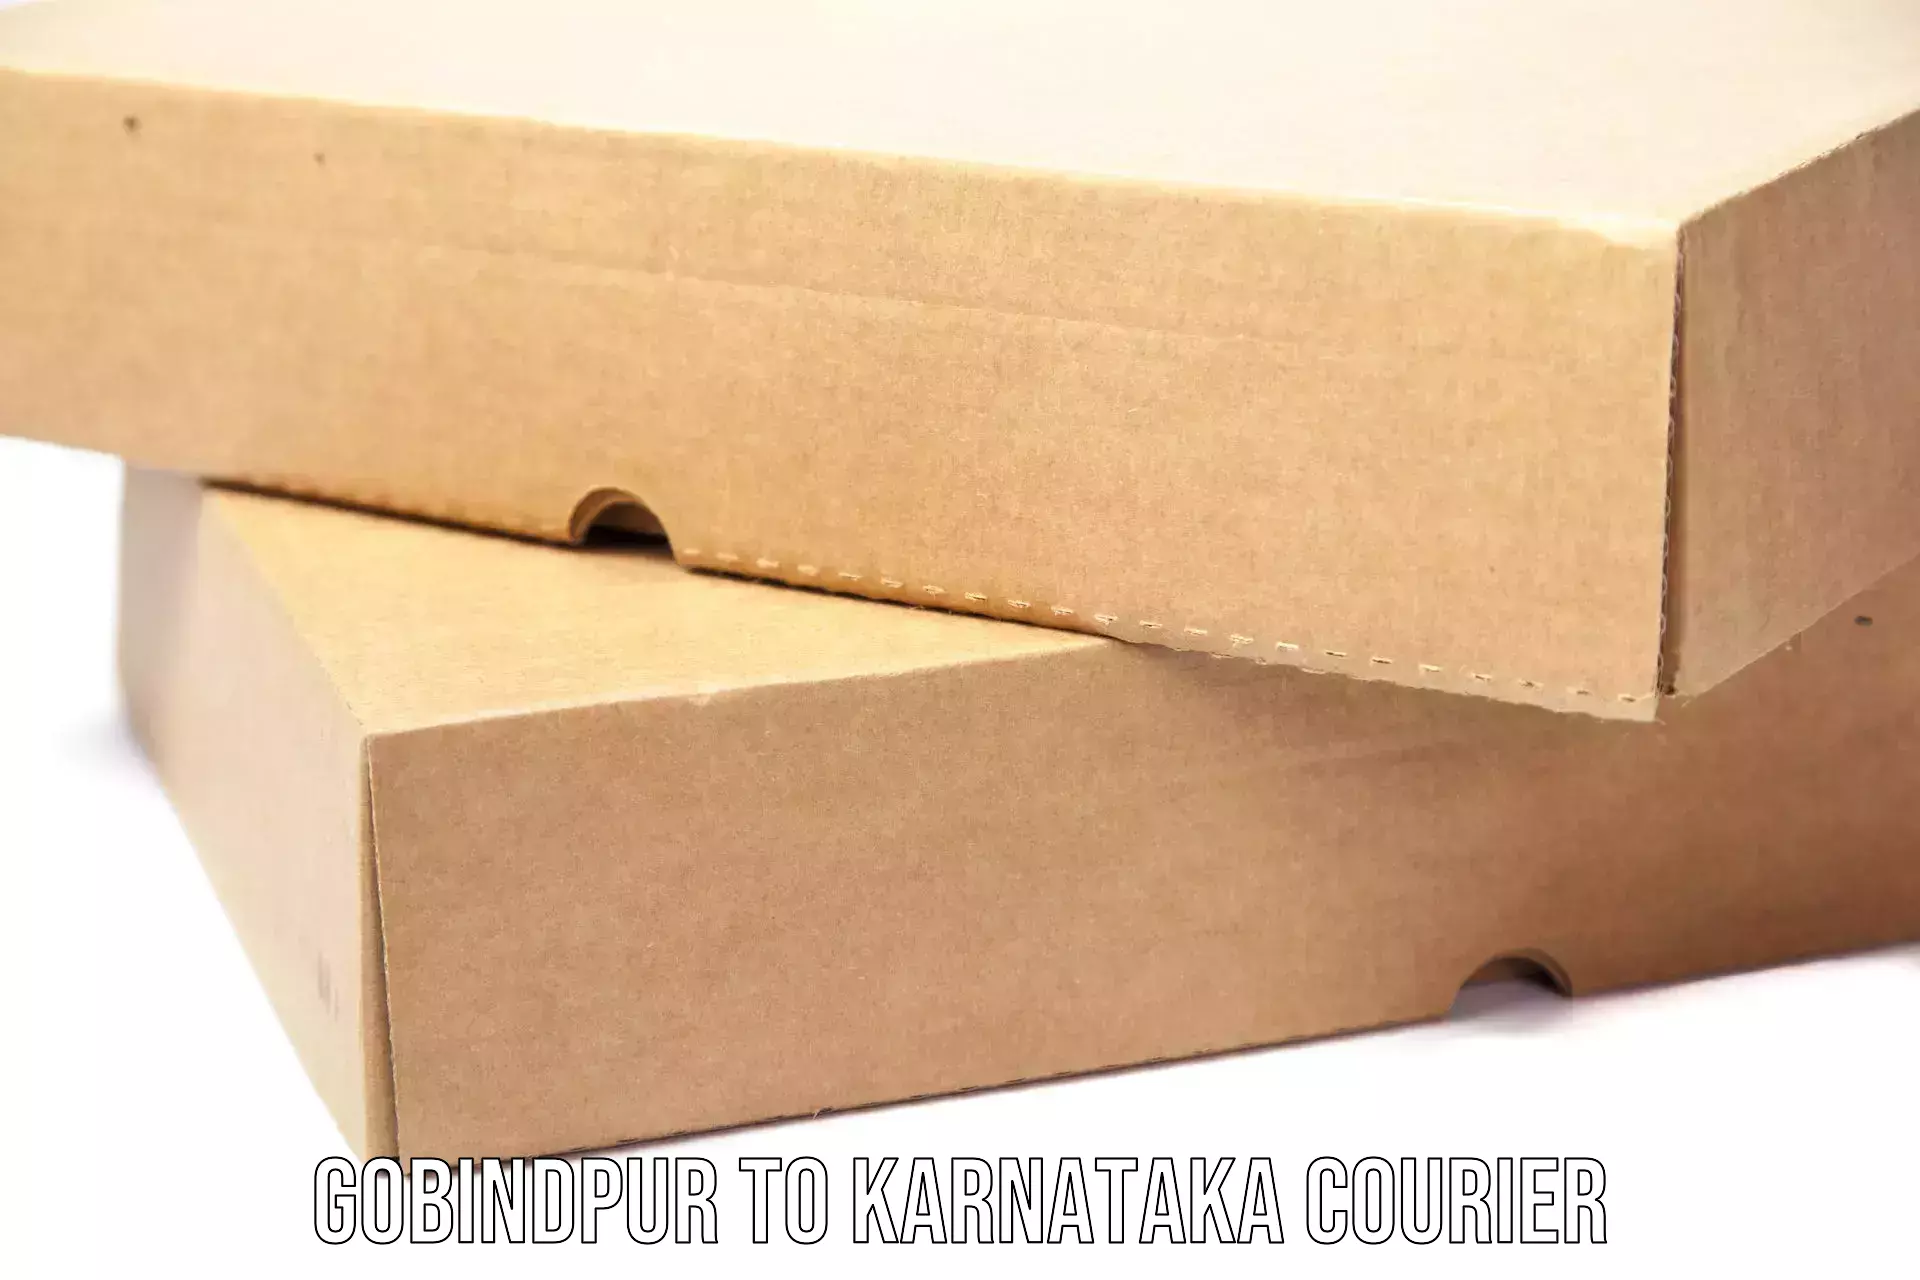 Professional courier services Gobindpur to Kalaburagi